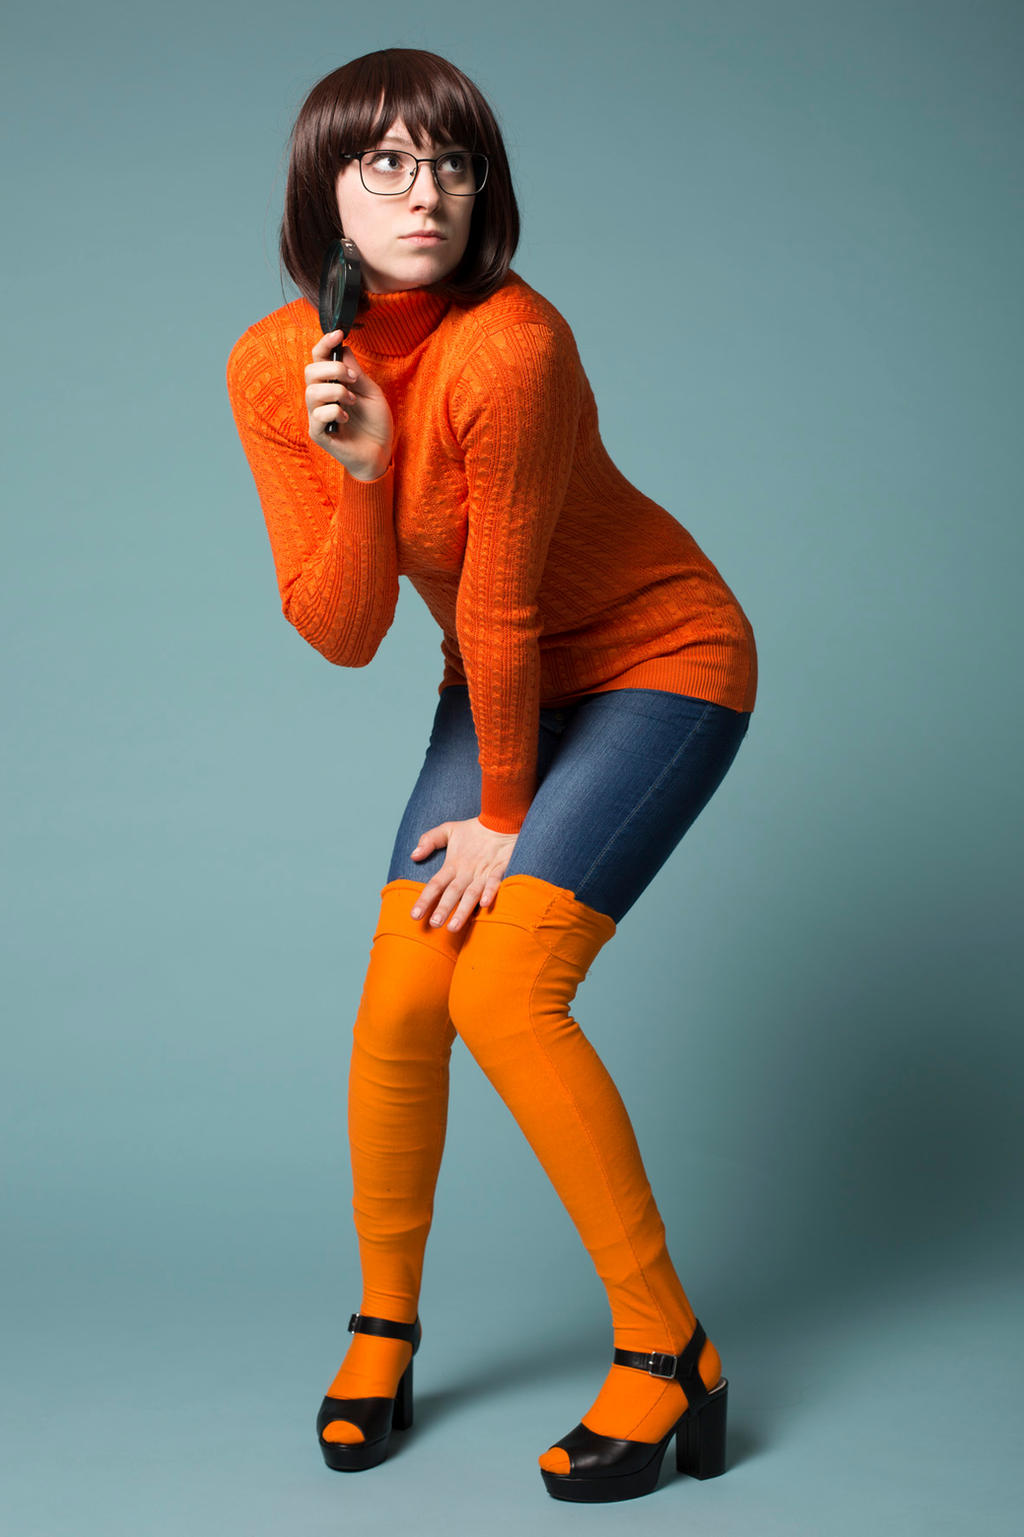 Velma cosplay by cosplayer Callmekira! by OfficialCallmekira on DeviantArt